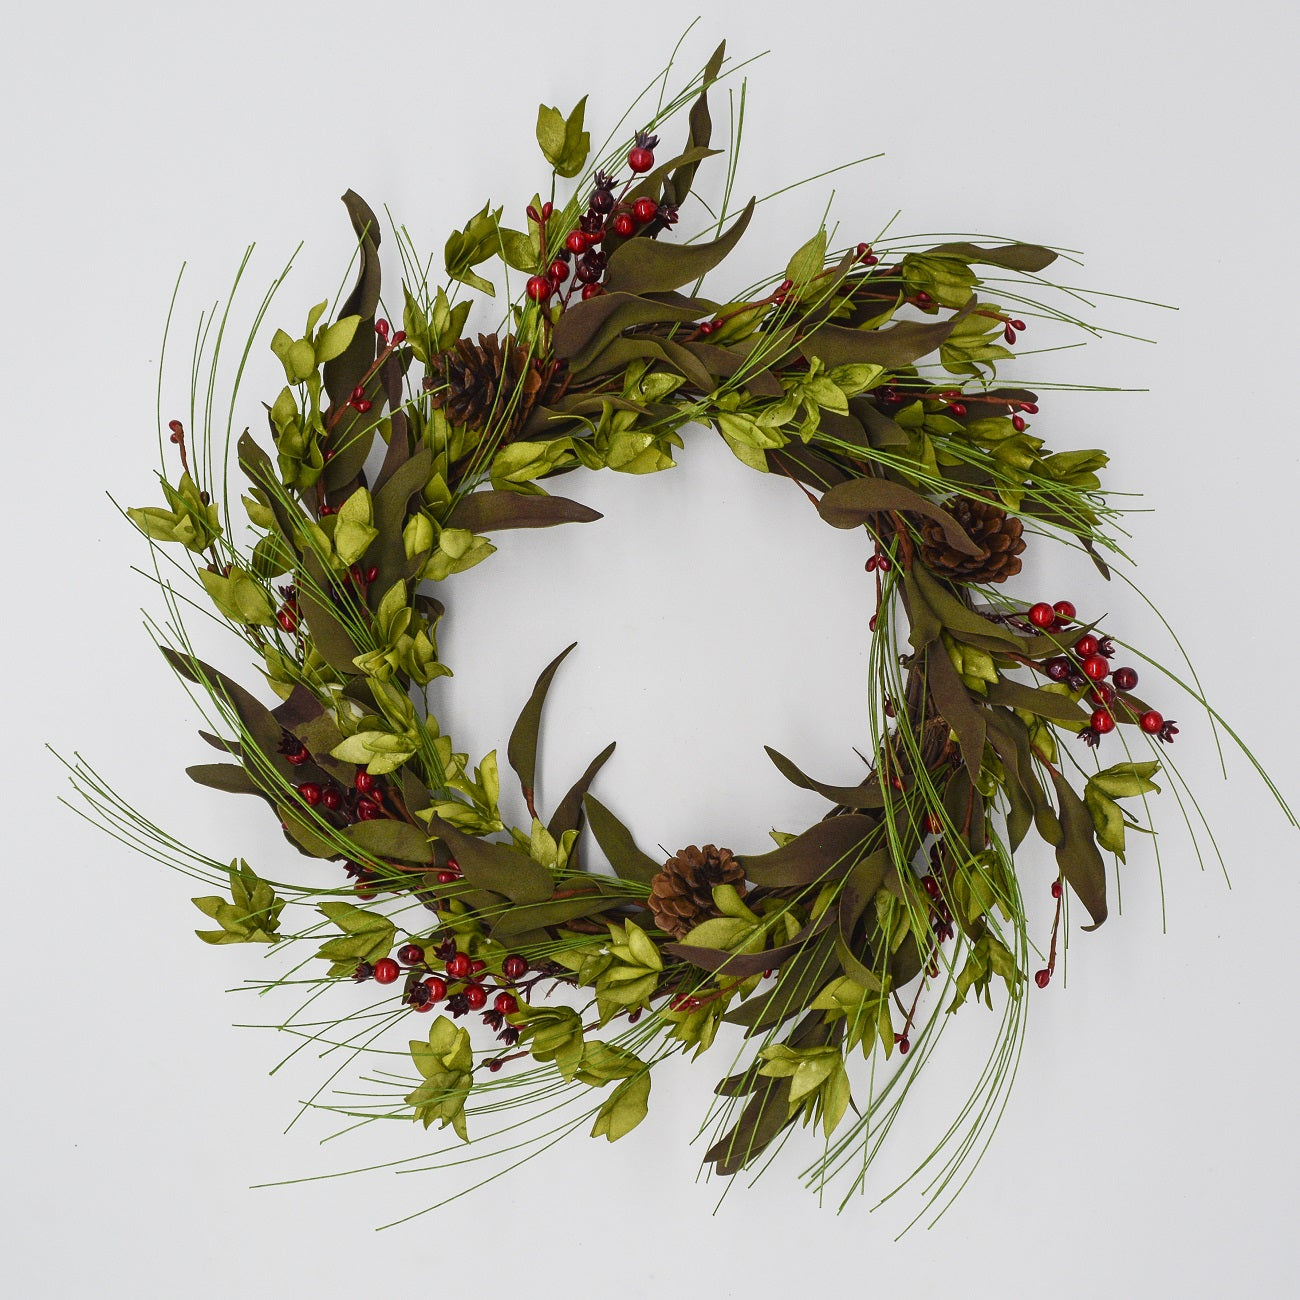 24" Pine Needle Berry Wreath